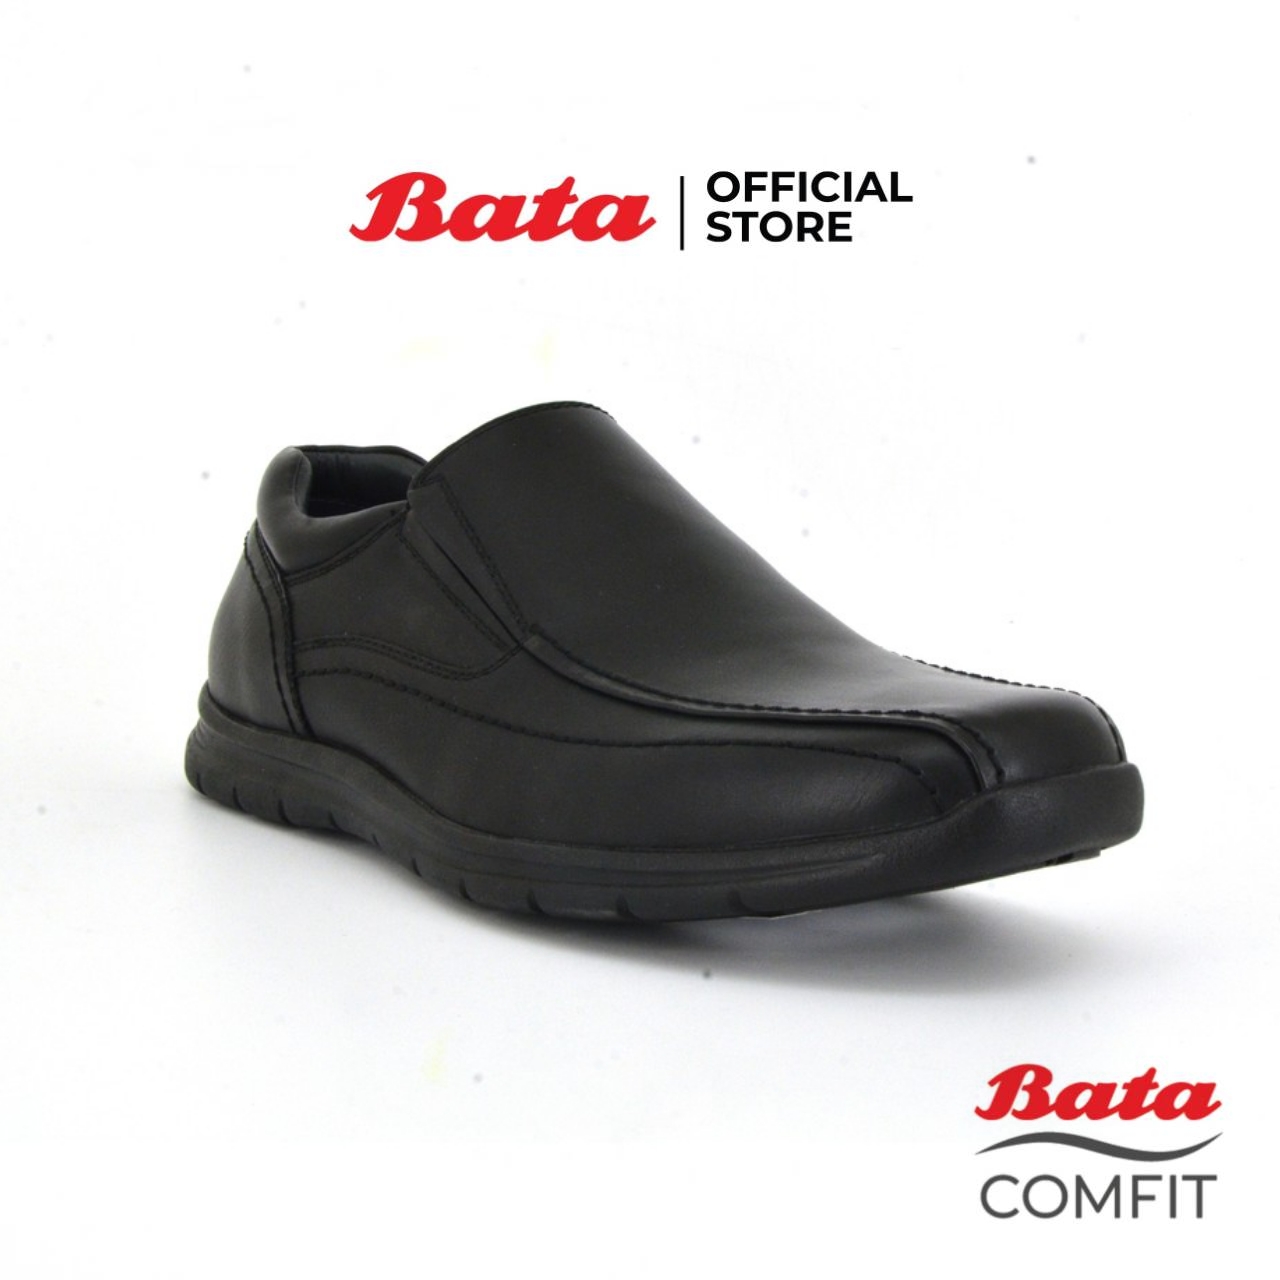 Bata COMFIT MEN'S Formal รองเท้าลำลองชาย รองเท้าหนัง รองเท้าทำงาน แบบสวม สีดำ รหัส 8516211 Menformal